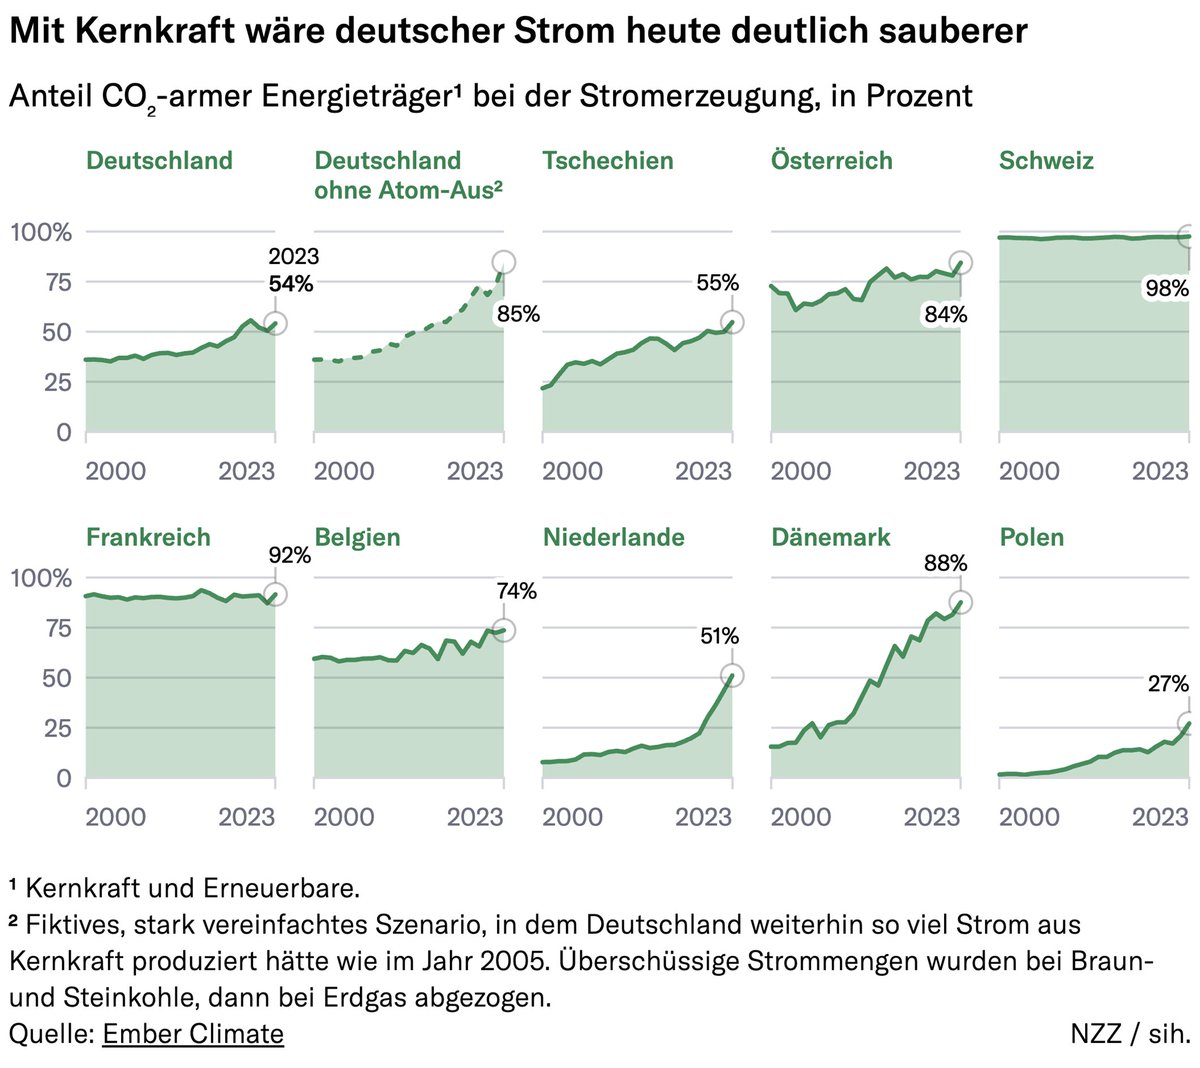 Weil es derzeit immer wieder heisst, der deutsche Atomausstieg führte nicht zu steigenden Emissionen: In einem fiktiven, stark vereinfachten Szenario ohne Atom-Aus ab 2005 läge der Anteil CO2-armer Energieträger heute bei 85% statt 54%, der von Kohle bei 0% statt 26%.